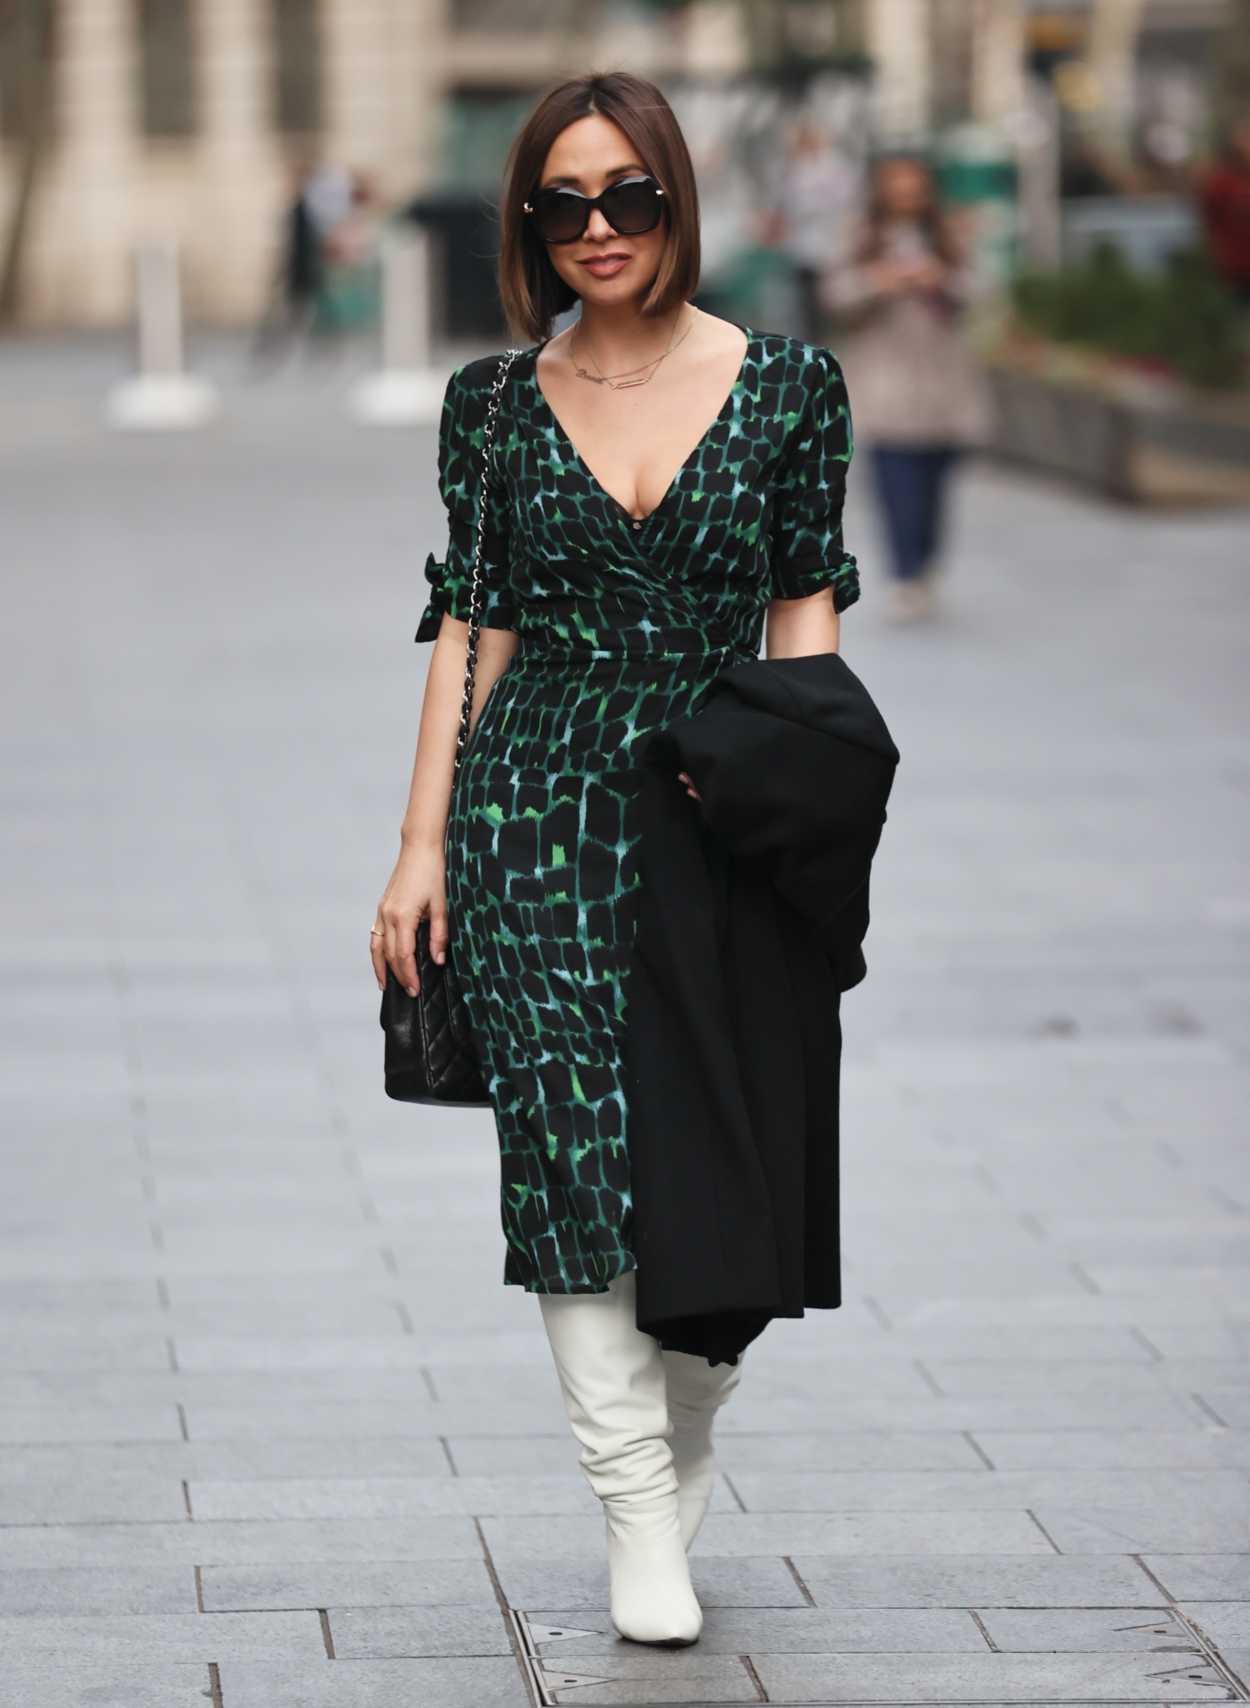 Myleene Klass in a Green Print Dress Was Seen Out in London 11/05/2020 ...